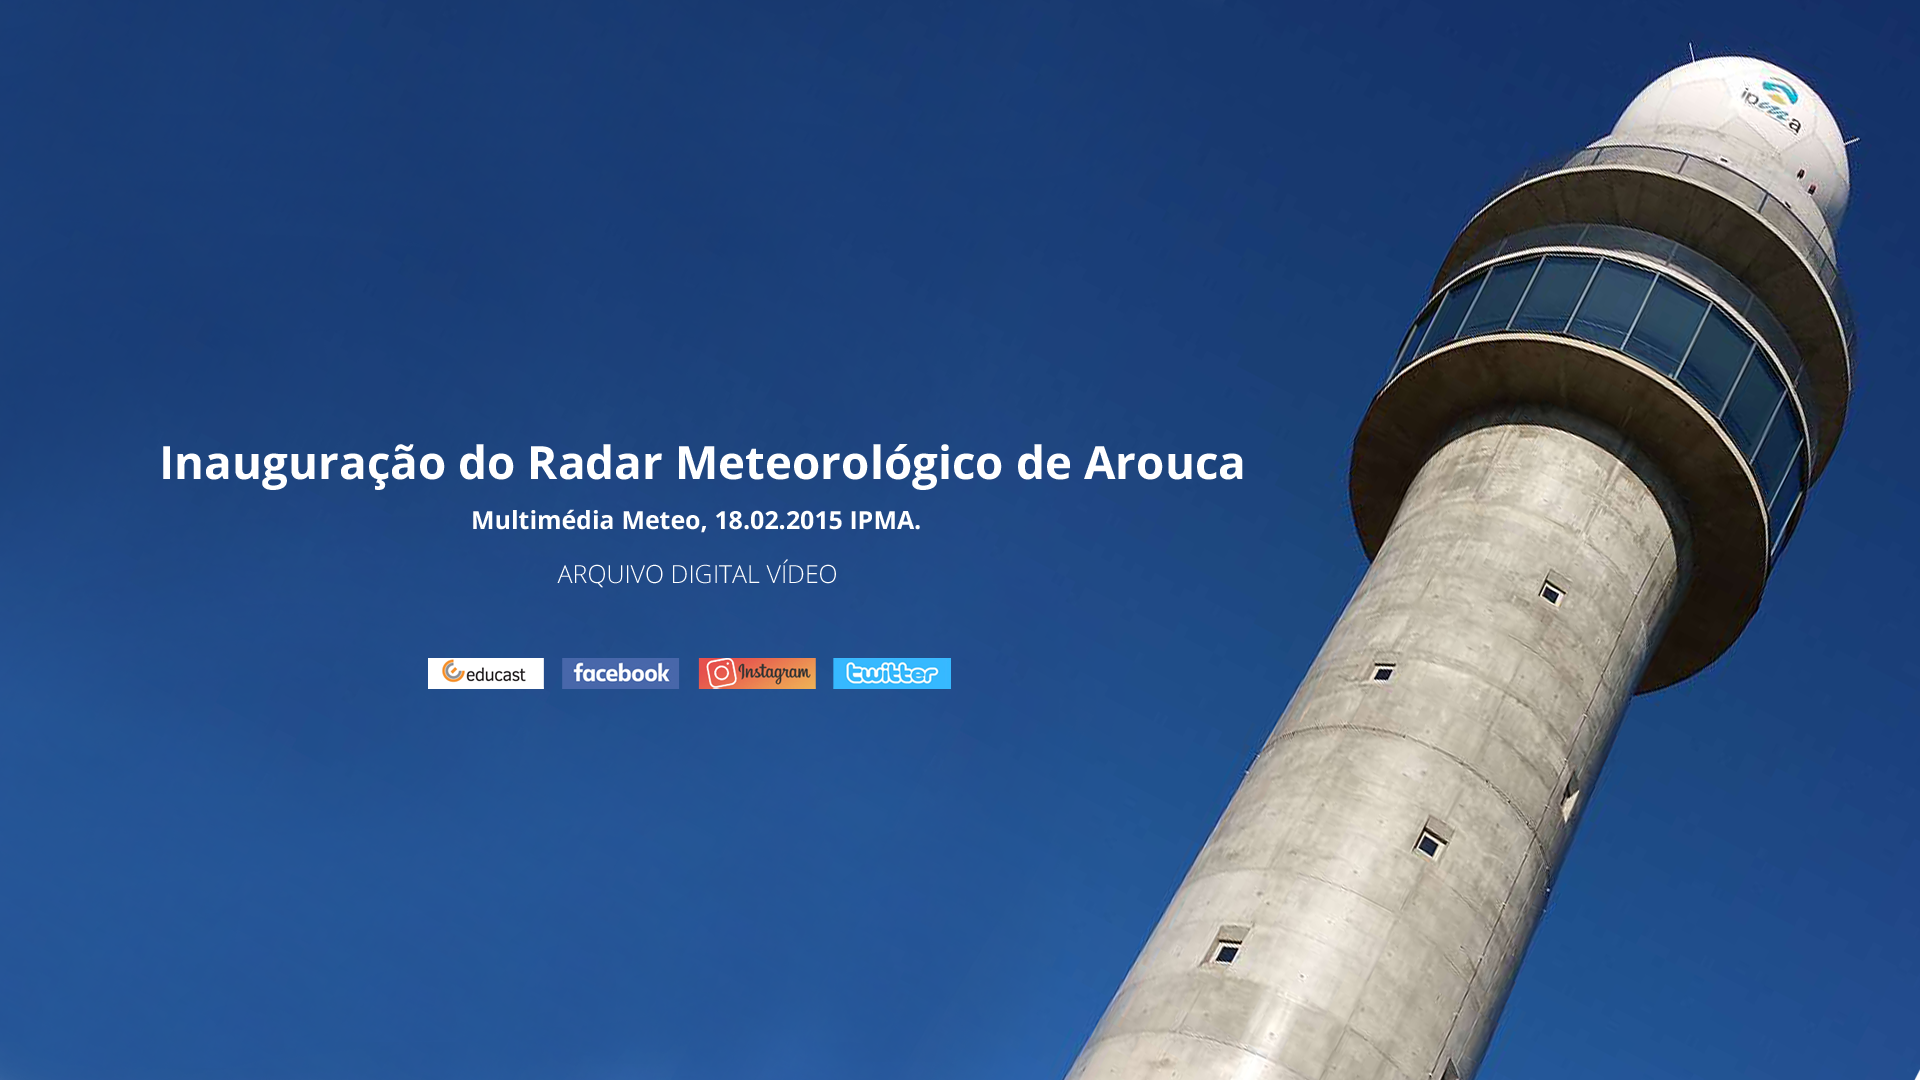  Inauguração do Radar Meteorológico de Arouca